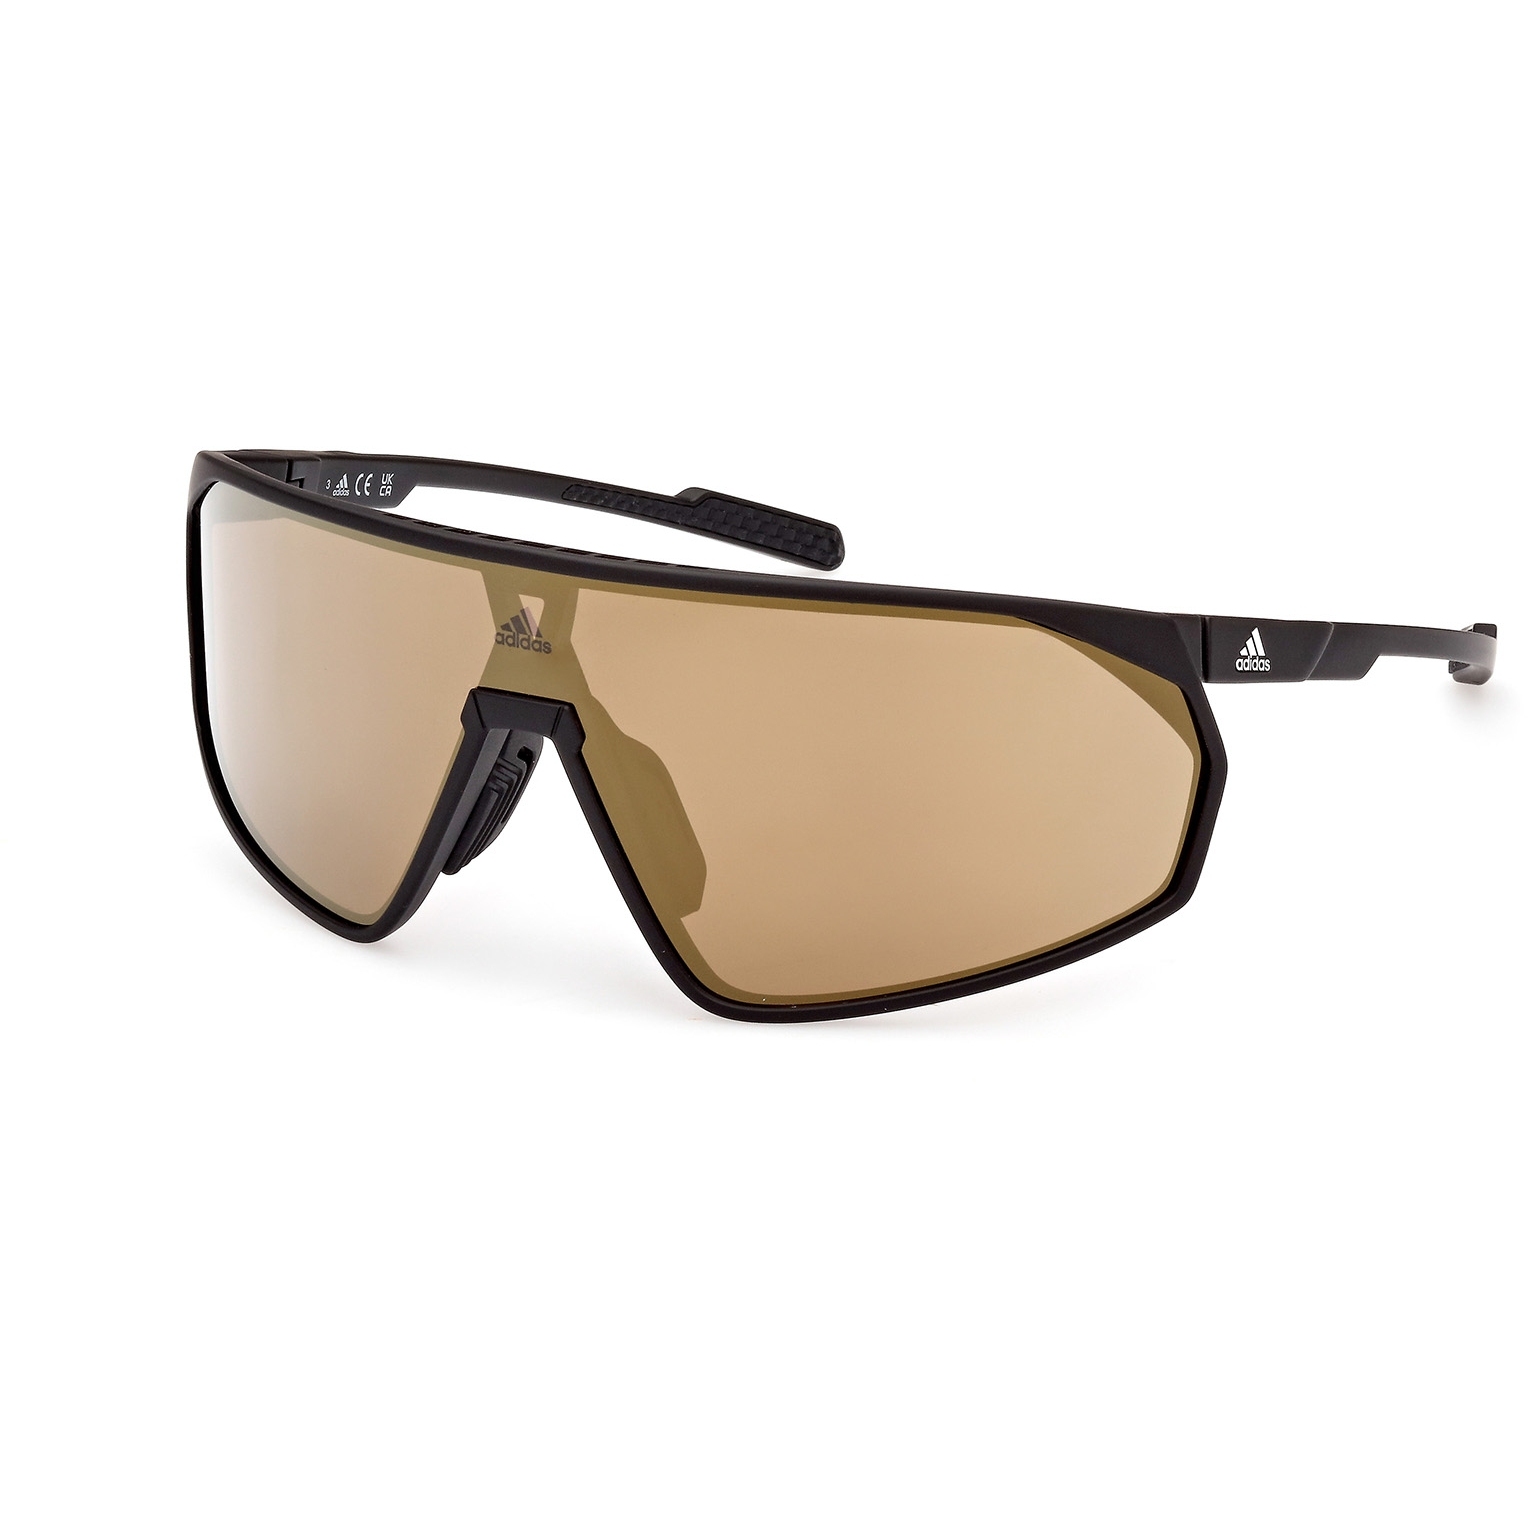 Produktbild von adidas SP0074 Sonnenbrille - Antique Black / Contrast Mirror Brown